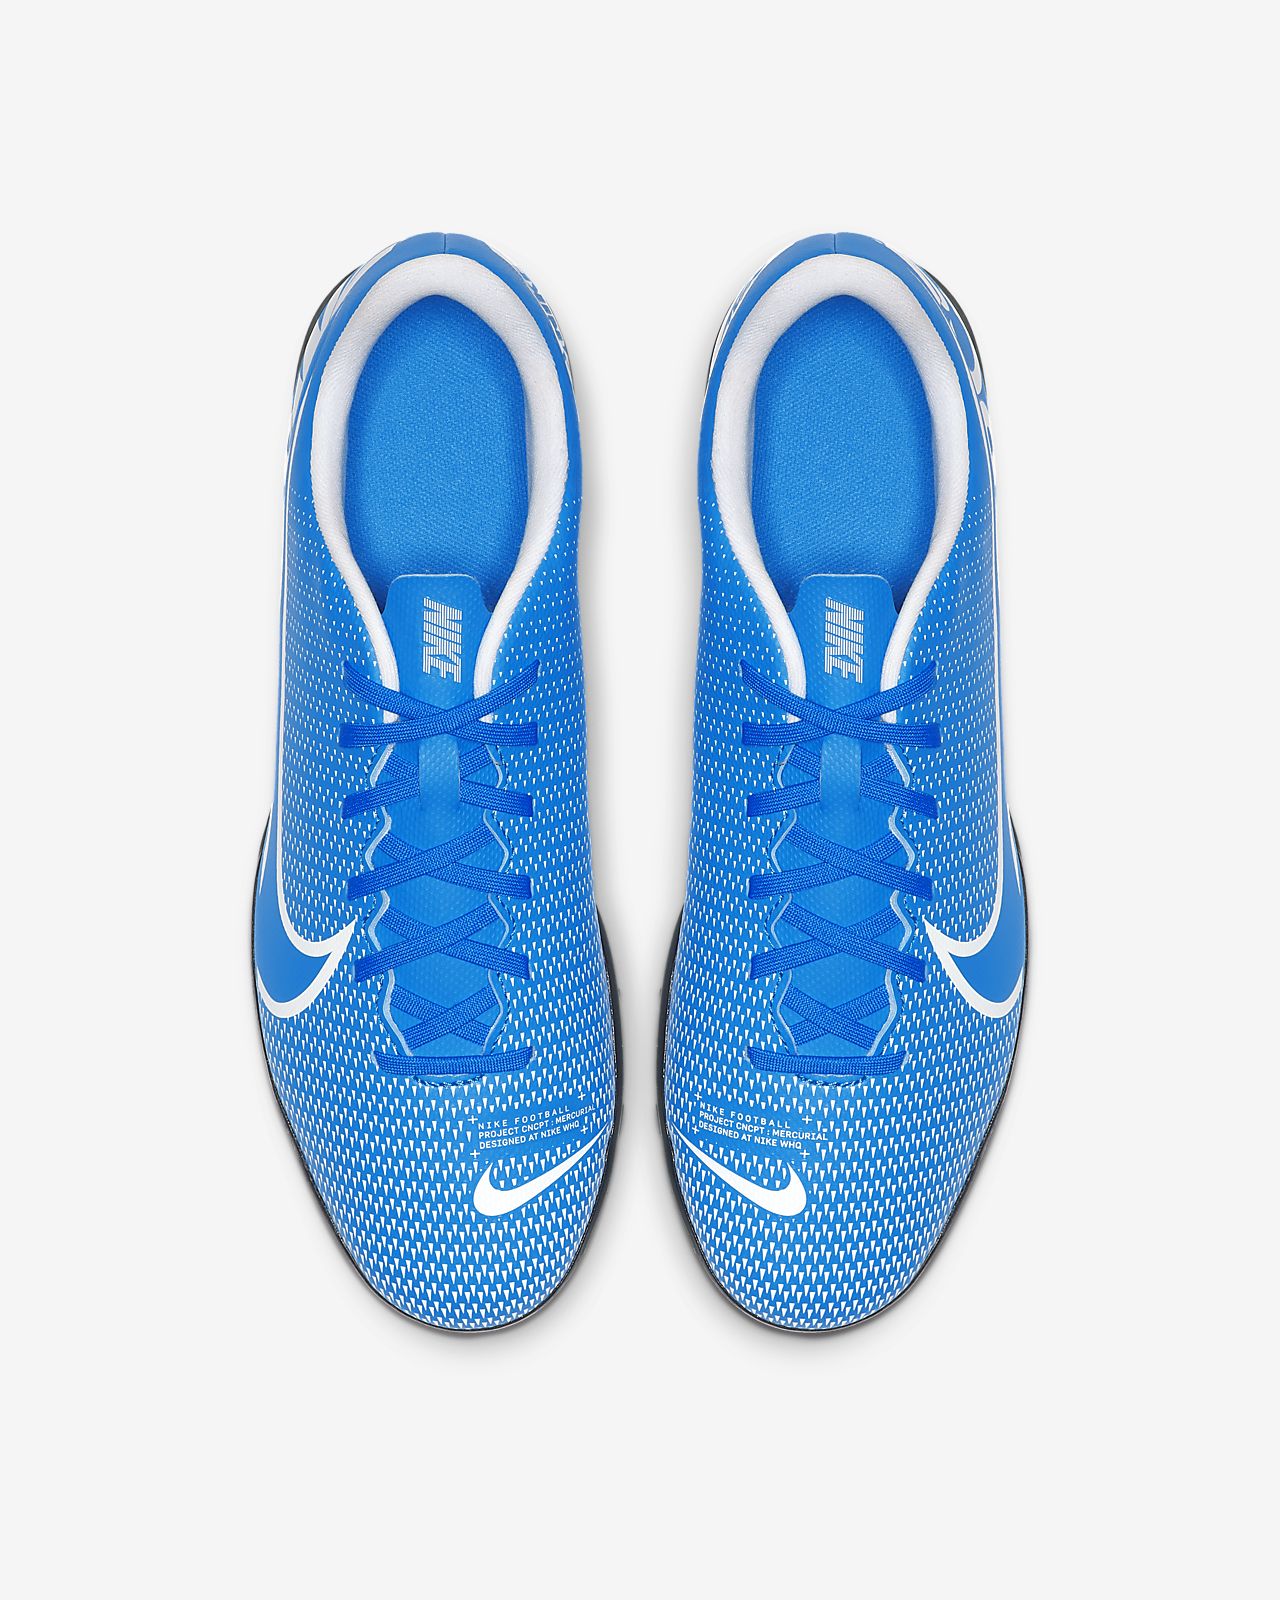 Nike Hypervenom Football Boots leakedsoccer.co.uk